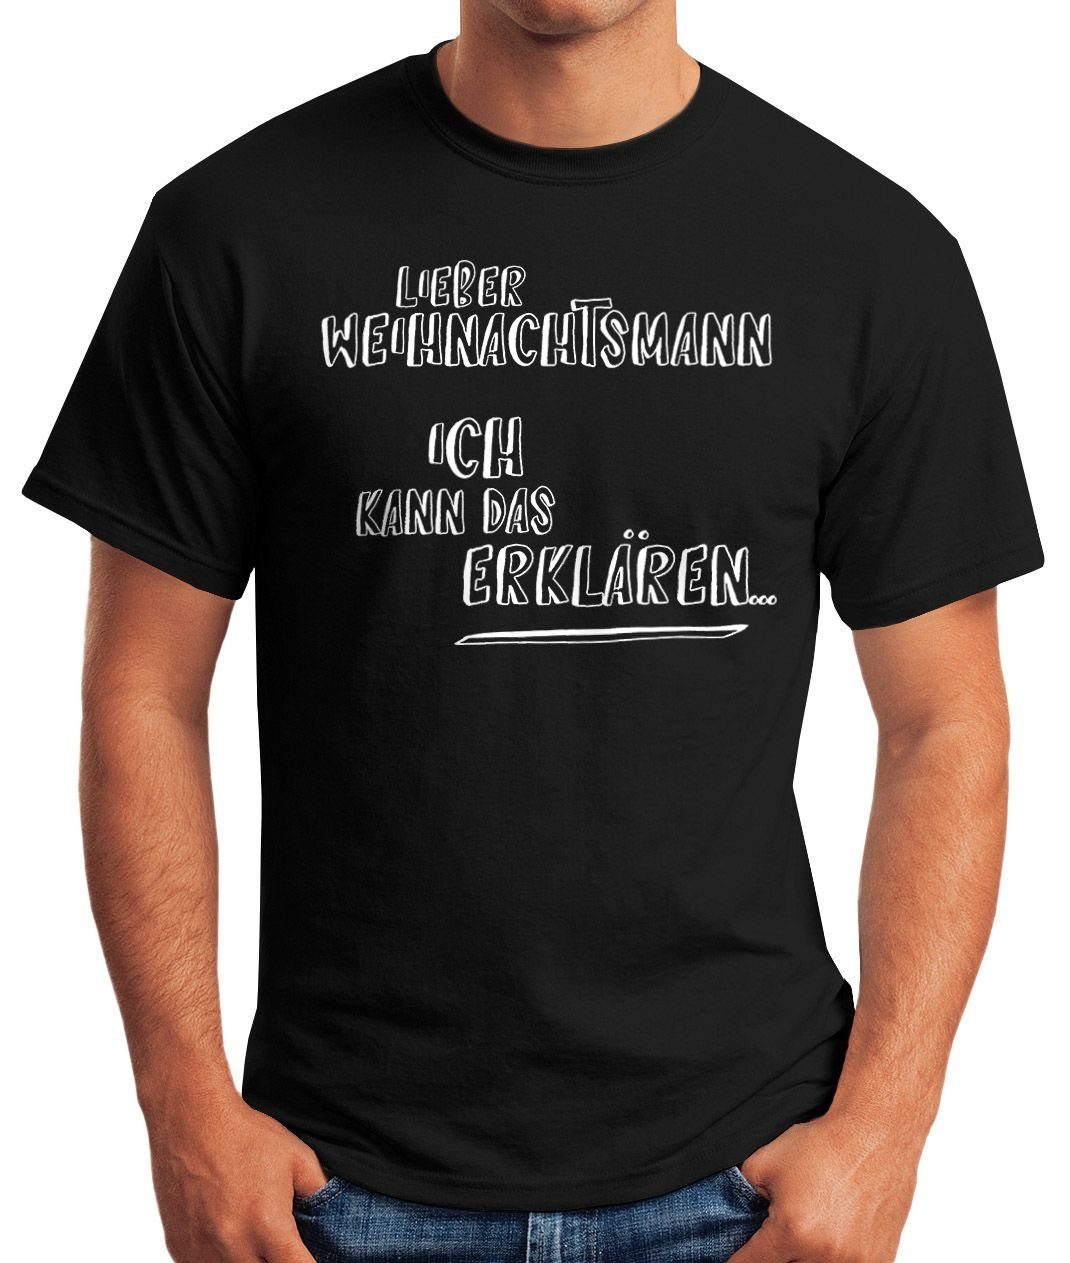 Weihnachtsmann erklären Herren Lieber kann mit schwarz MoonWorks das Weihnachten Ich lustiges T-Shirt Print-Shirt Weihnachtsshirt Print Moonworks®